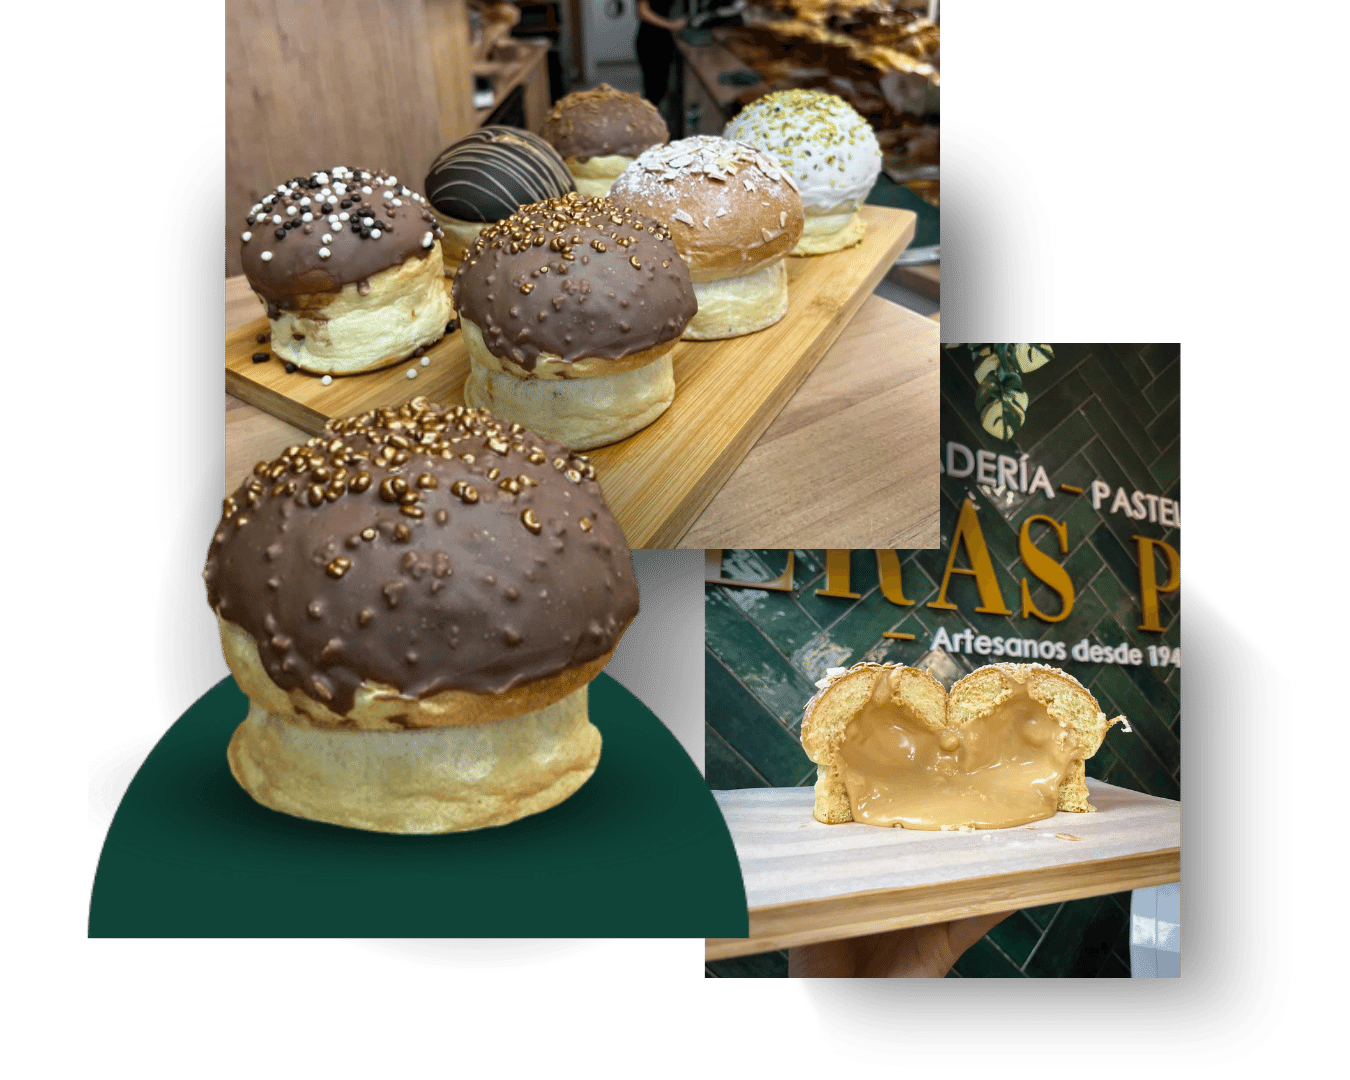 Eraseta de Eras Pan, la panaderia y pasteleria de Valencia